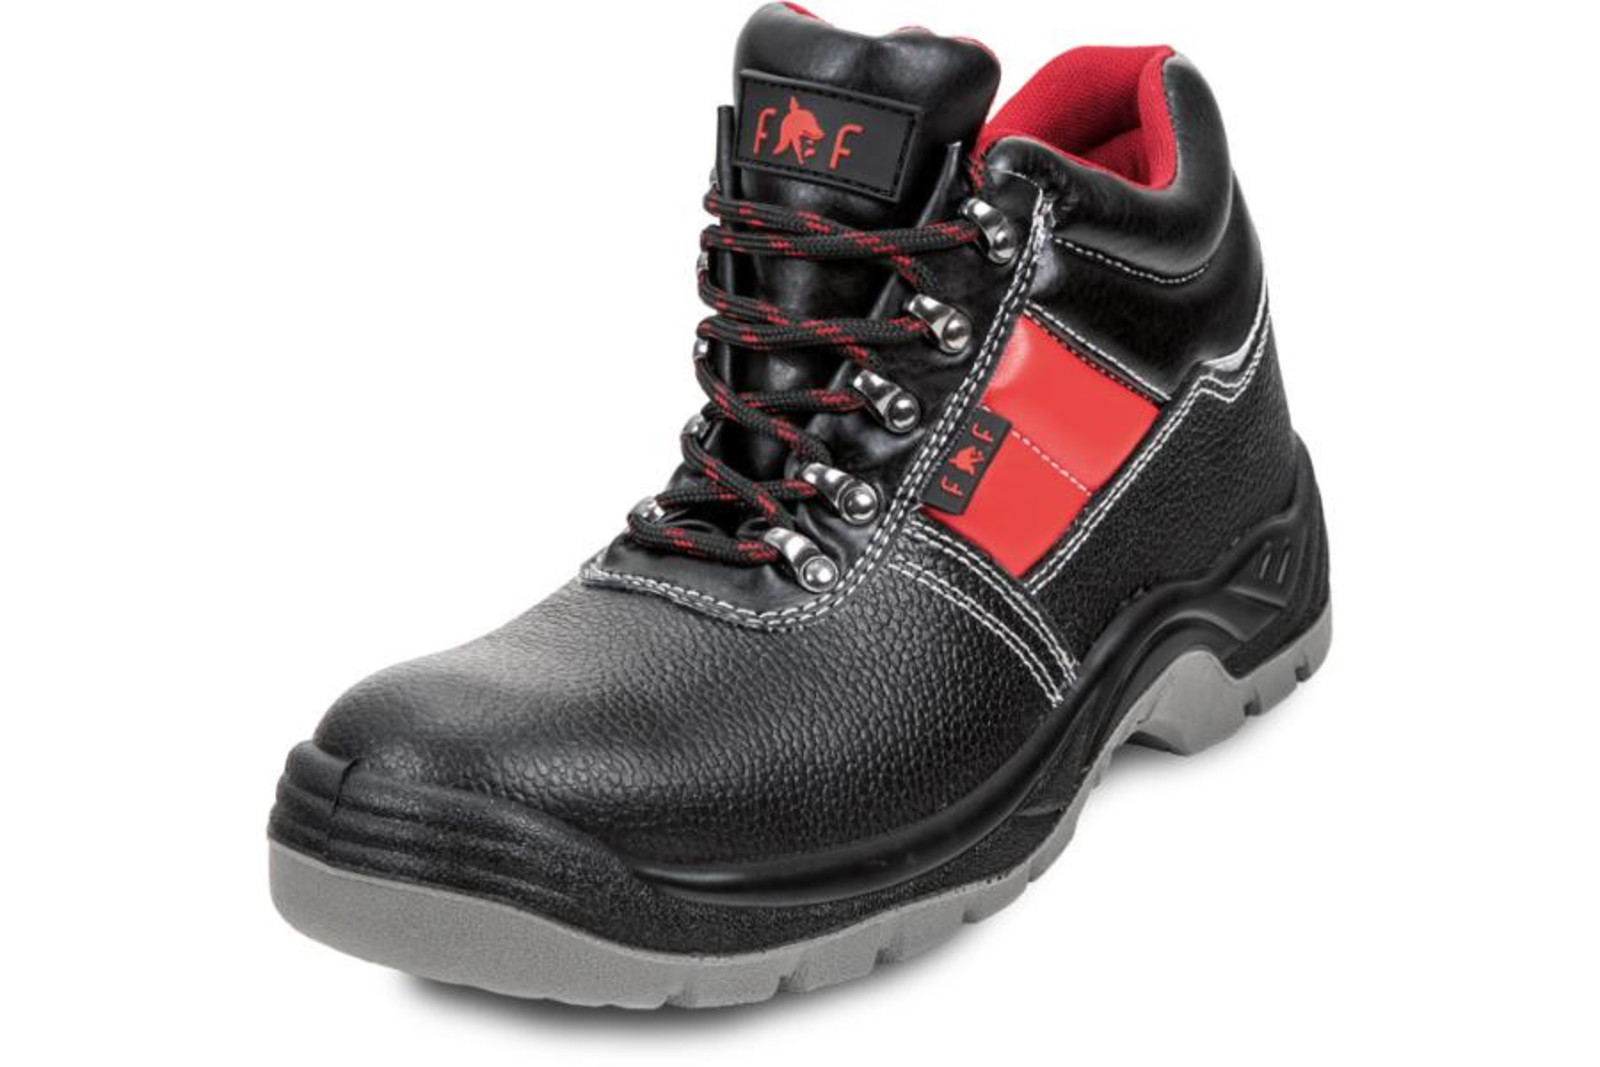 Bezpečnostná obuv SC 03-003 S3 - veľkosť: 38, farba: čierna